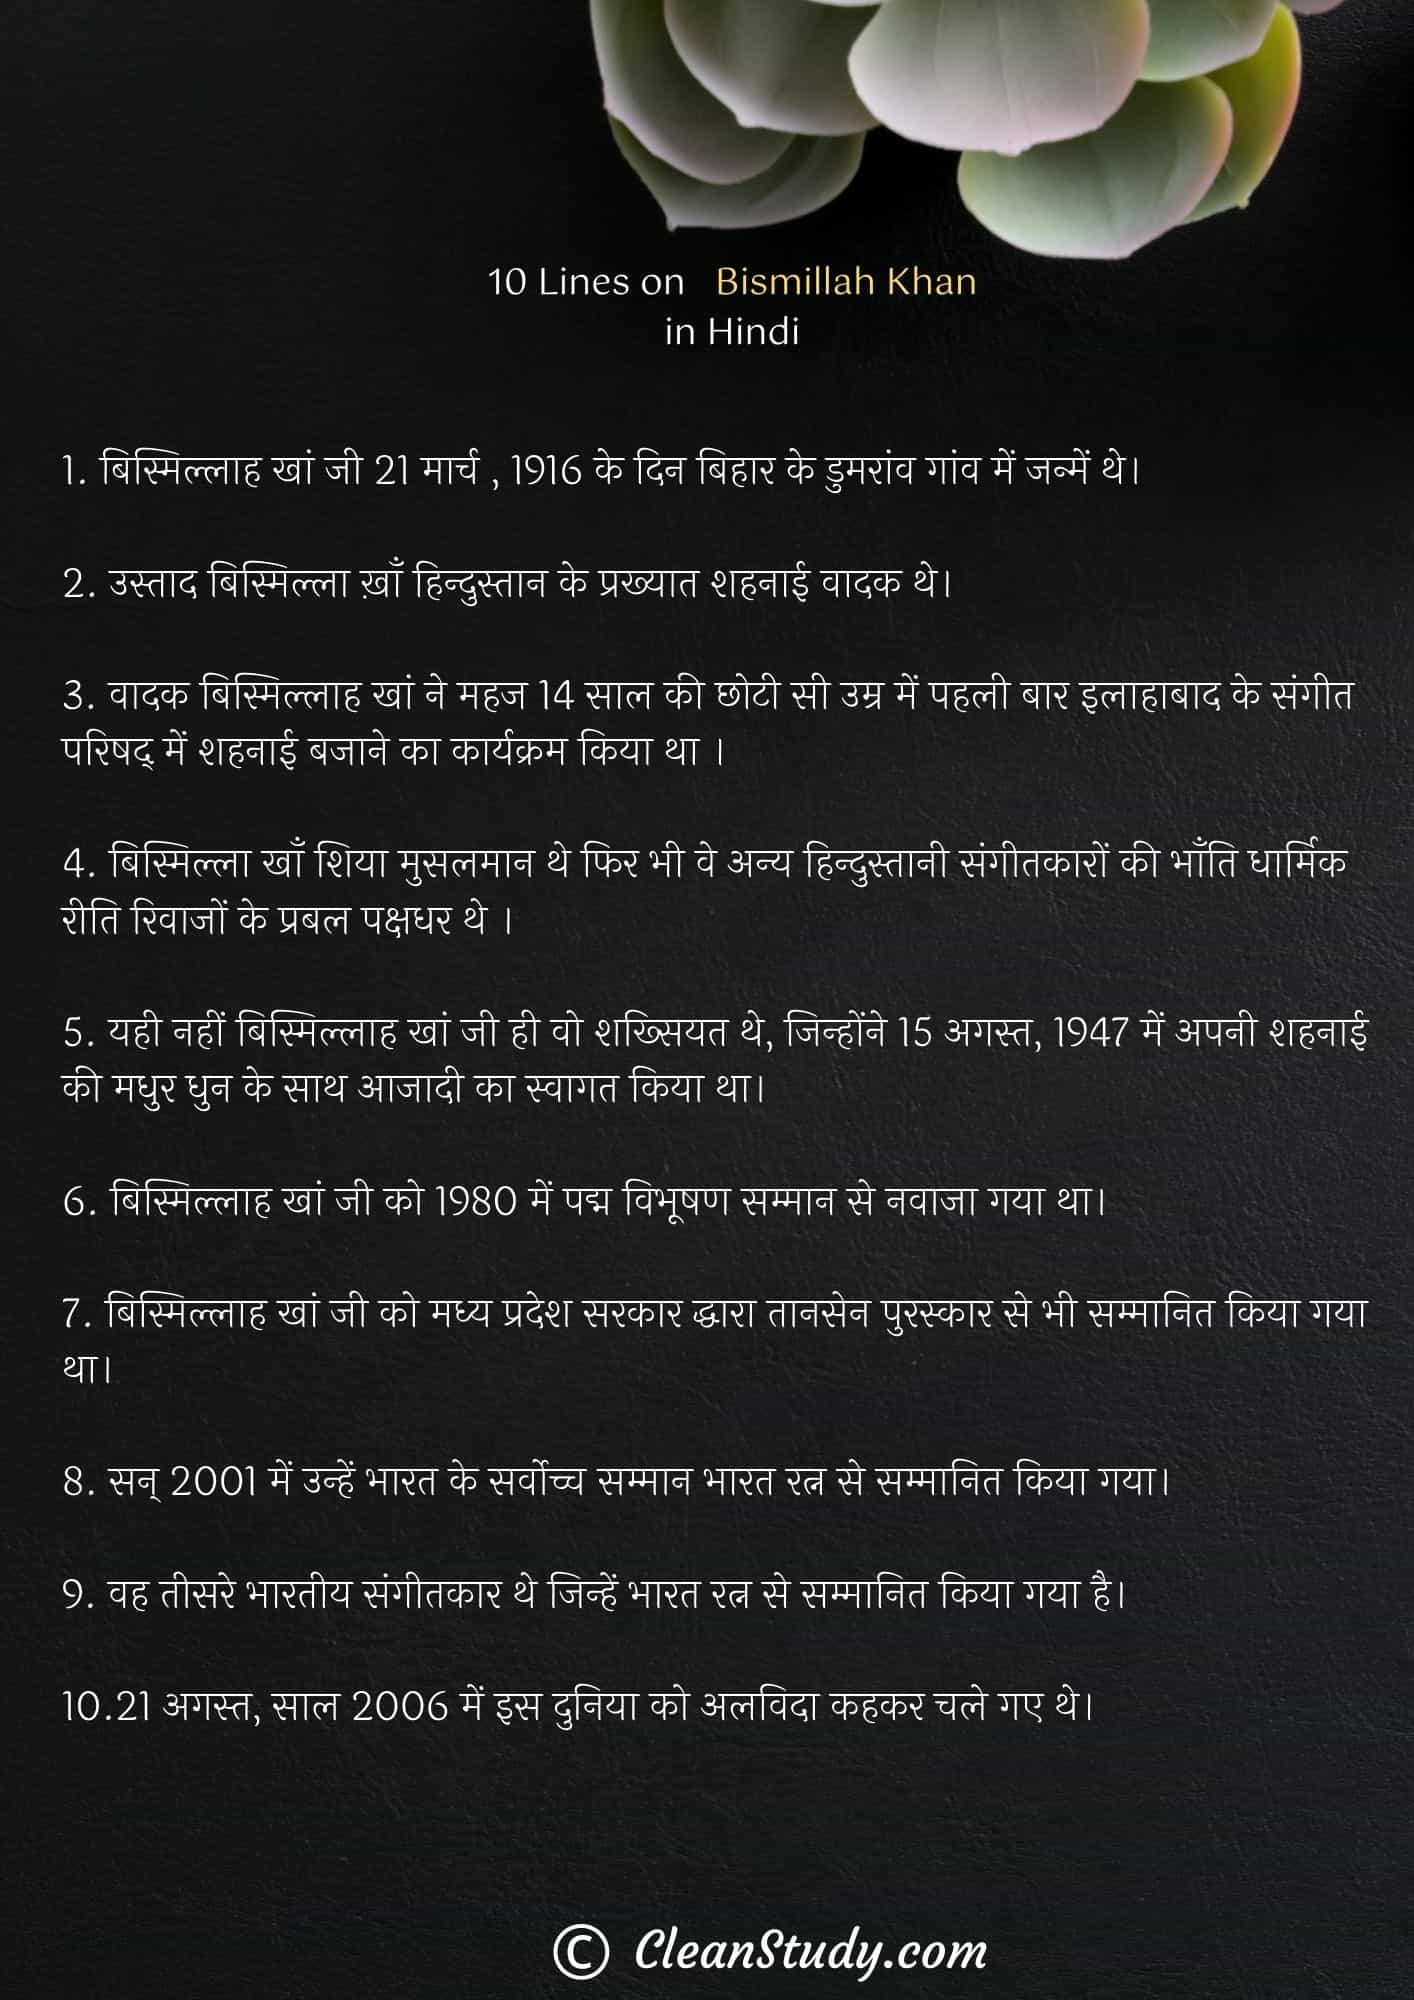 10 Lines on Bismillah Khan in Hindi